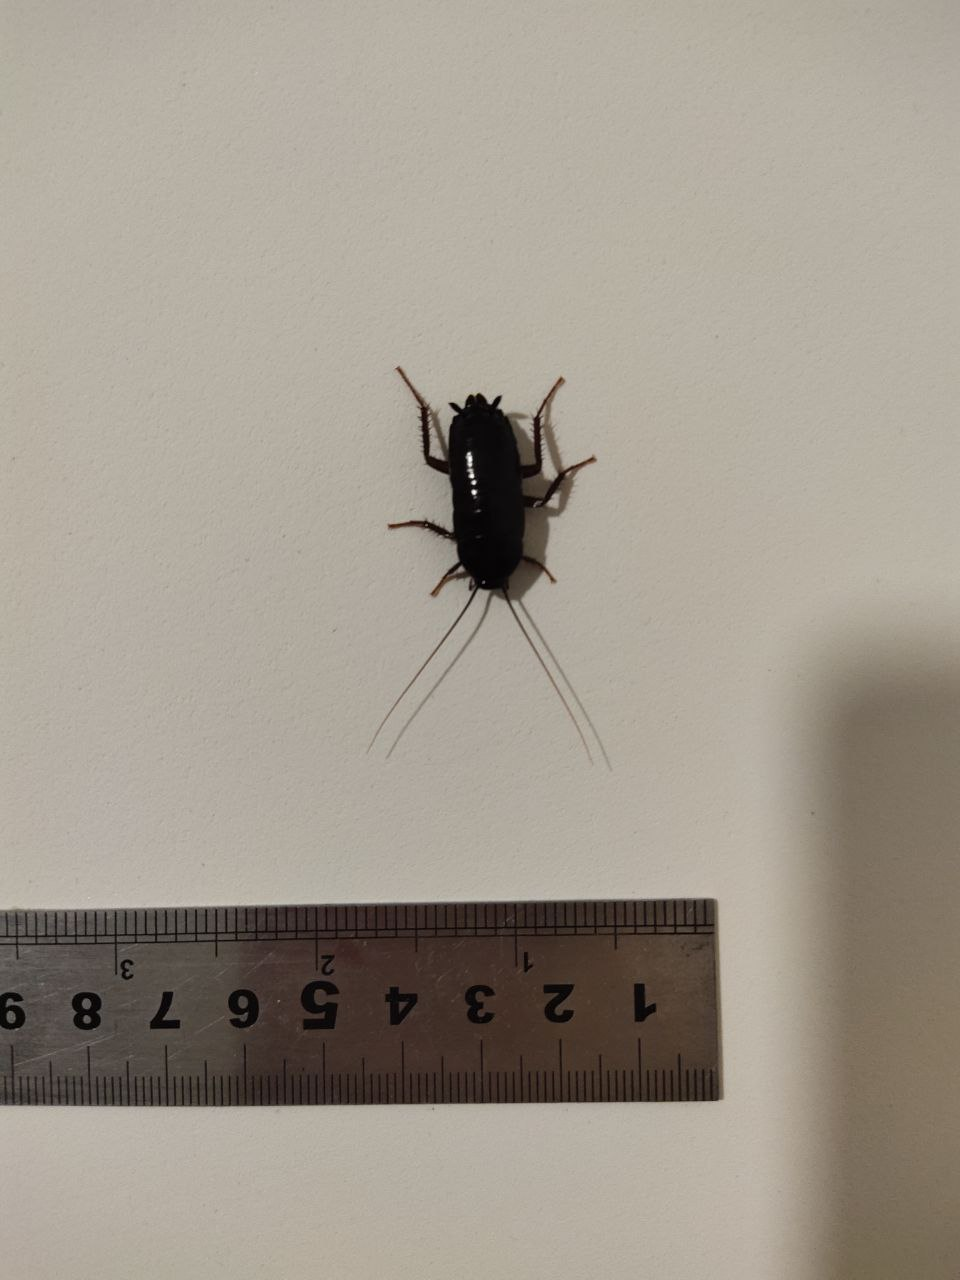 Жуки похожие на черных тараканов. Чёрный Жук похожий на таракана. Жуки похожие на тараканов. Черный жучок похожий на таракана. Чёрные жуки в квартире похожие на тараканов.